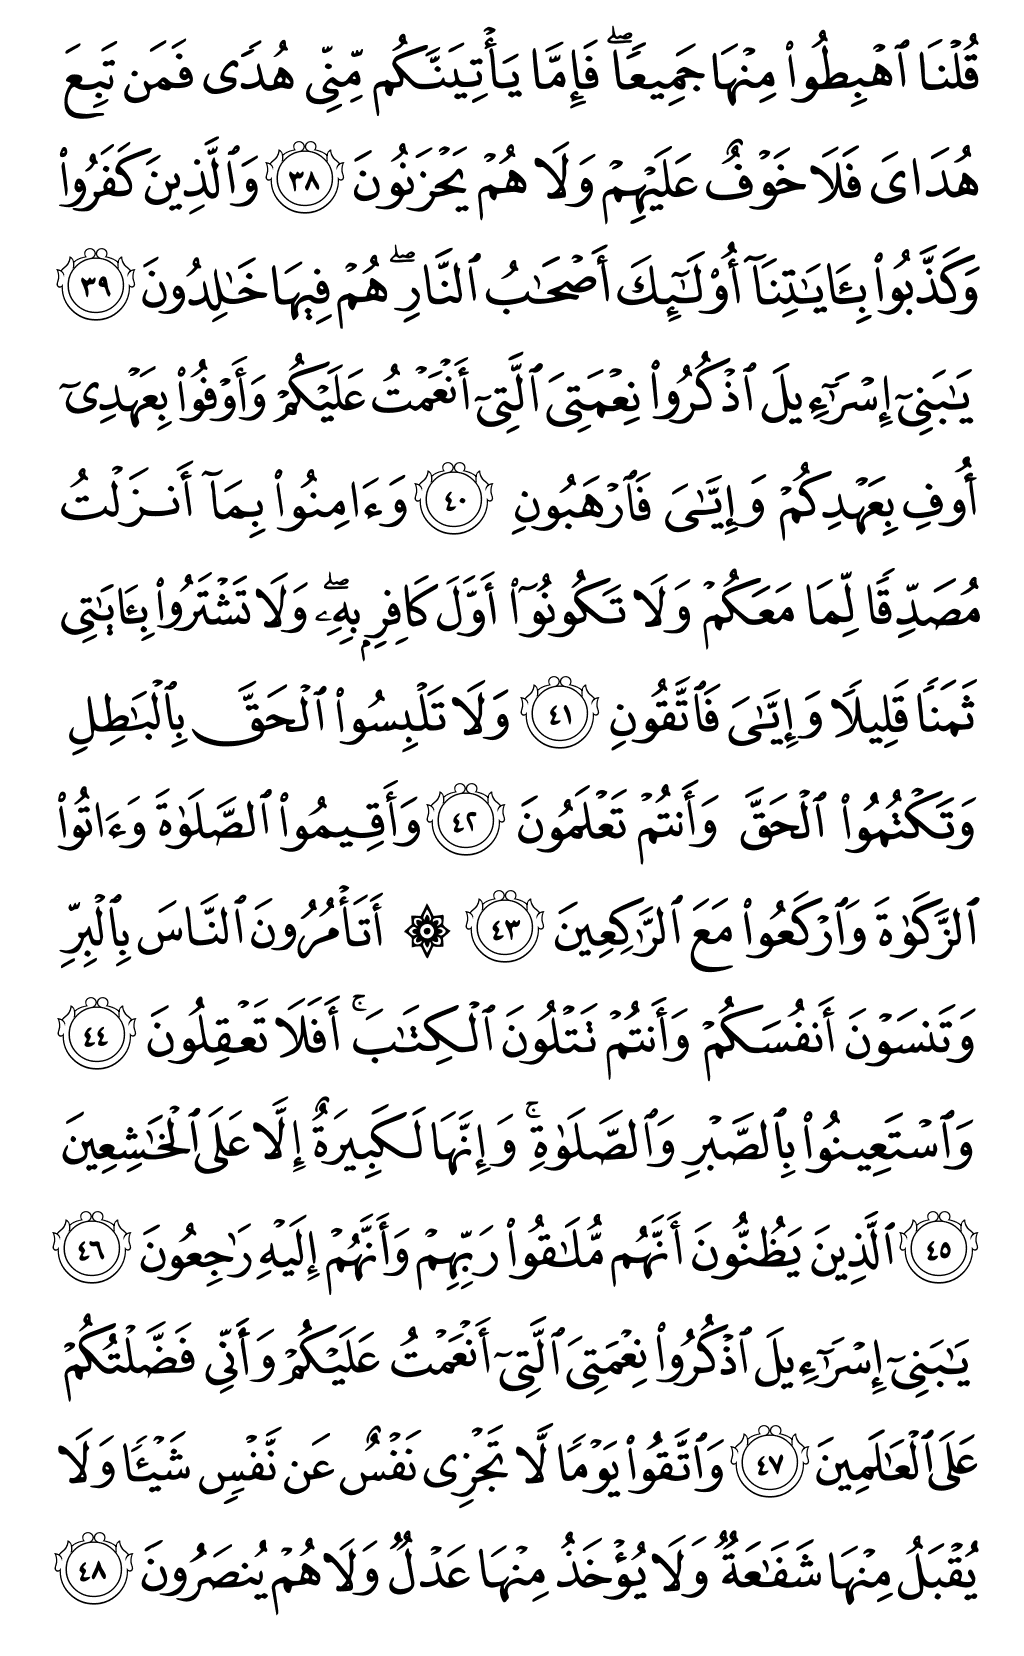 الصفحة رقم 7 من القرآن الكريم